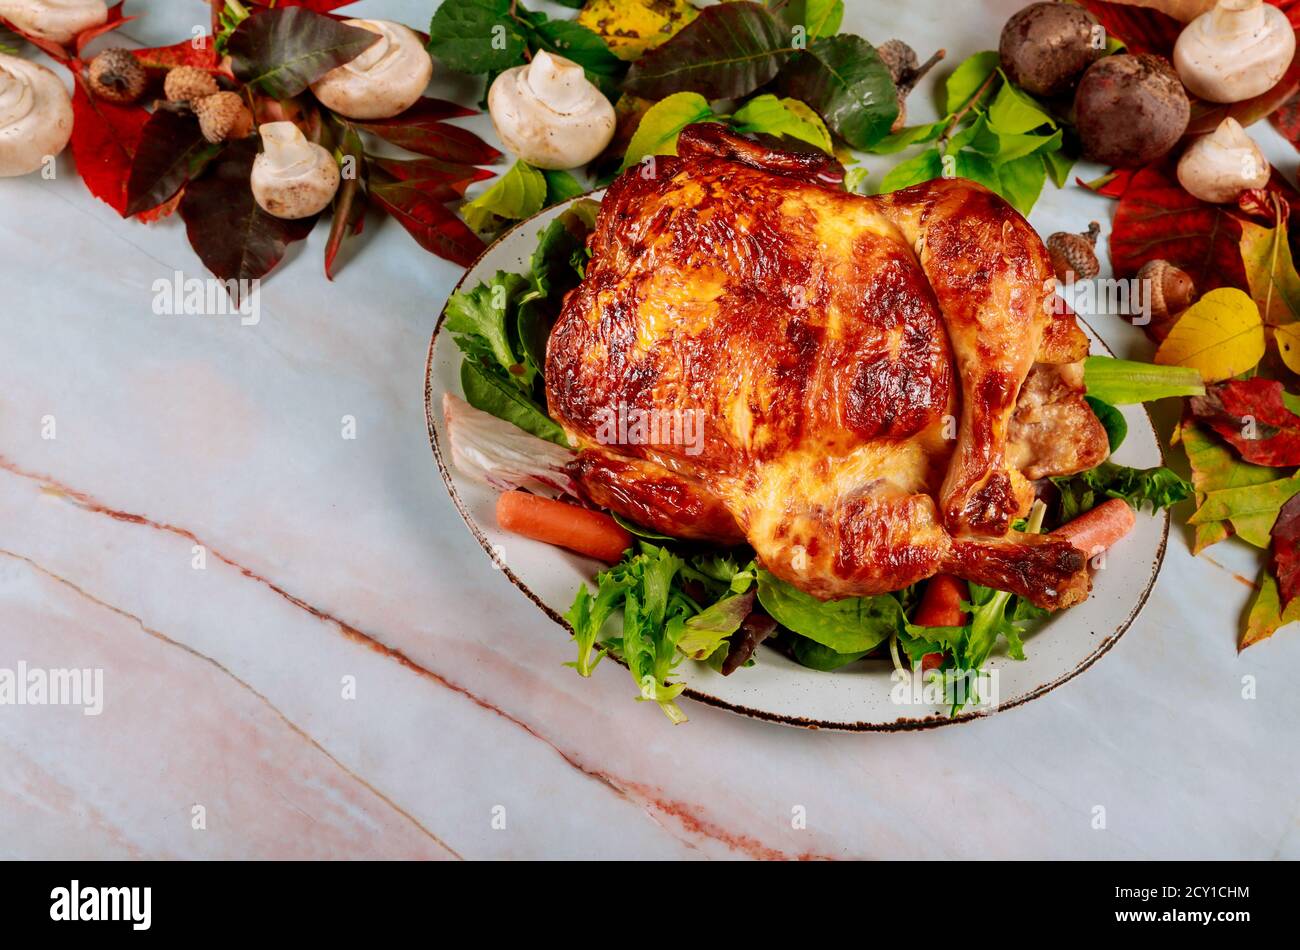 Traditionell dekorierter Herbsttisch mit traditionellem Thanksgiving-Dinner im Gebratenes Huhn mit Ernteurlaub Stockfoto